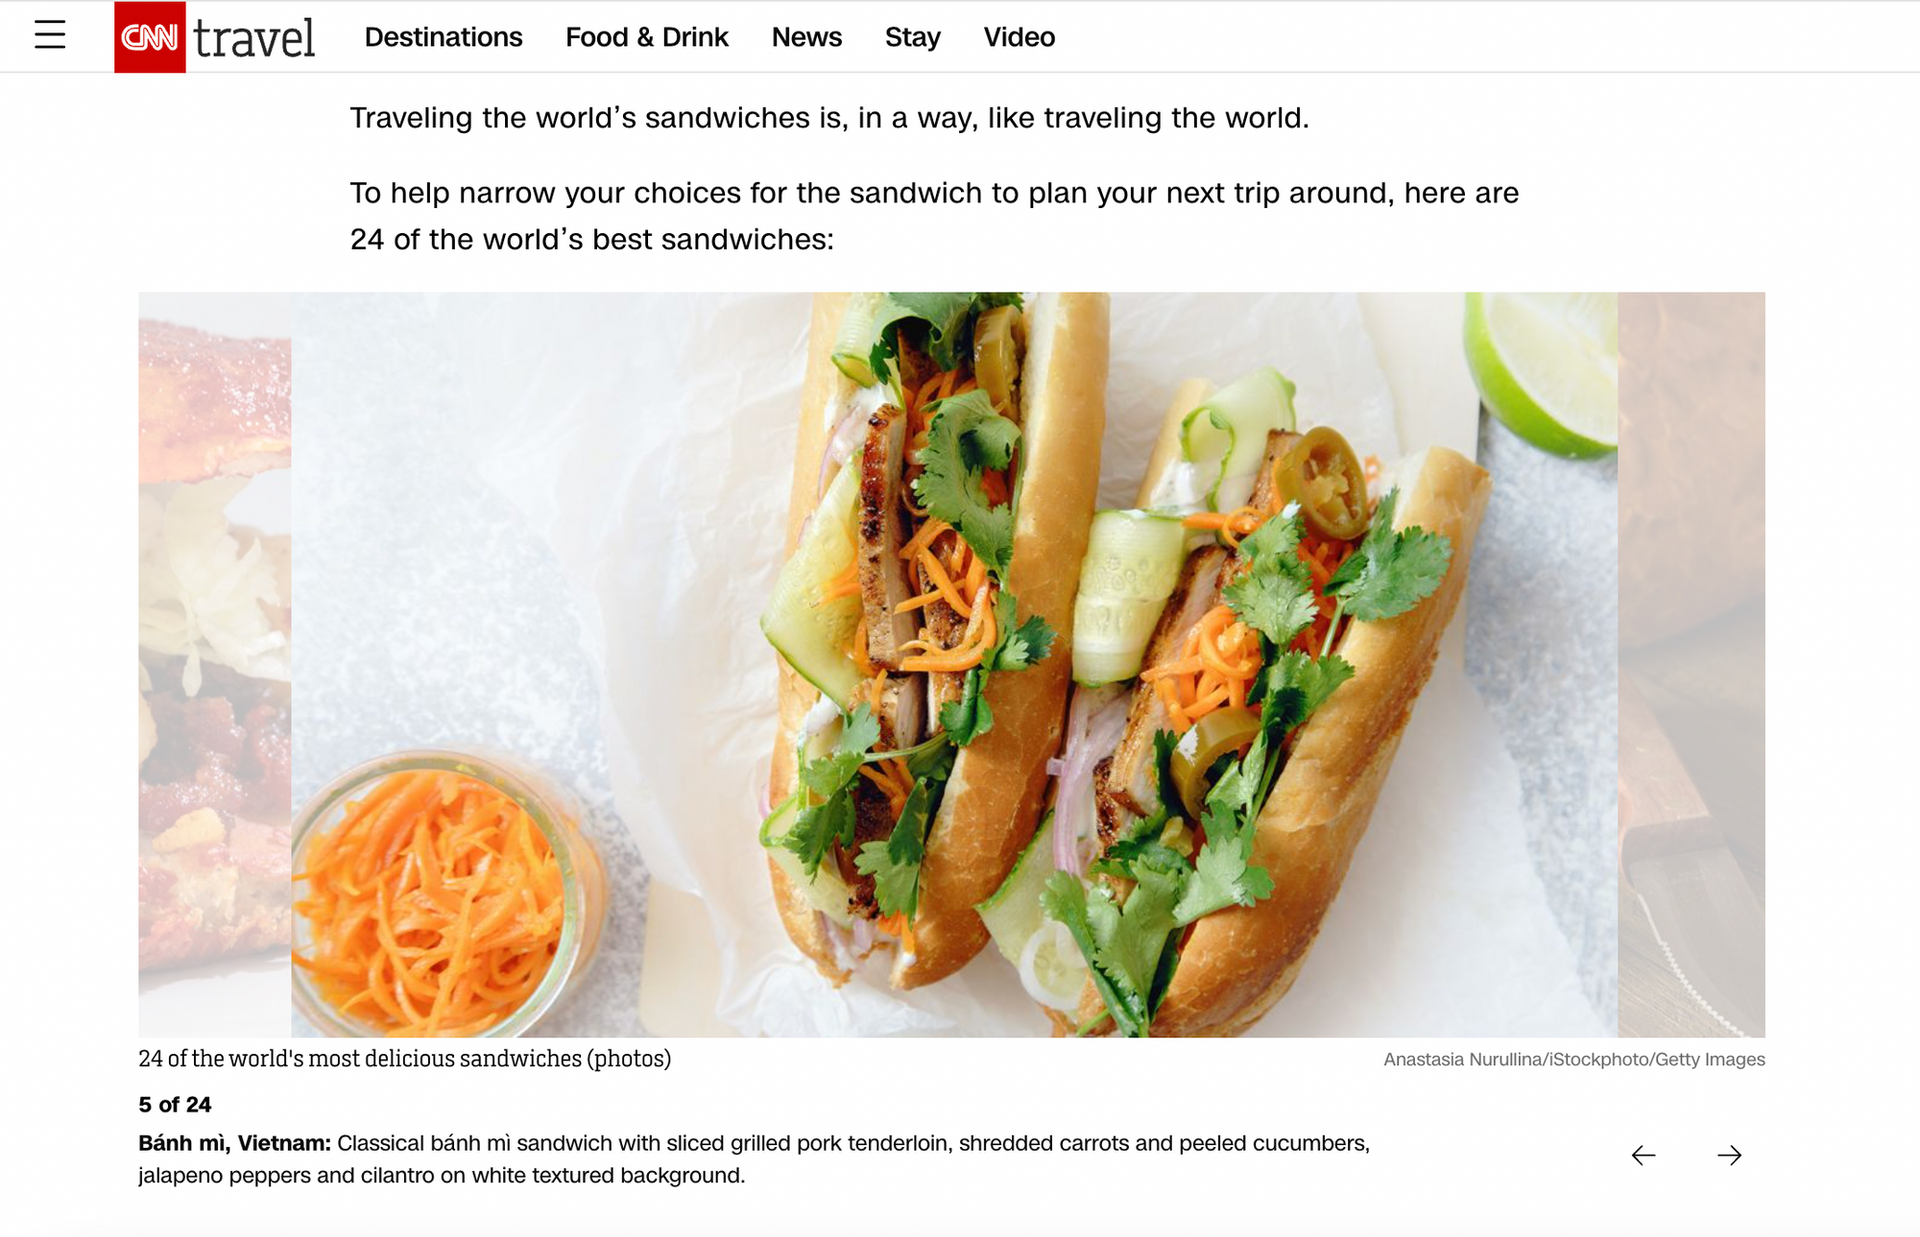 Bánh mì Việt Nam đứng thứ 5 trong top 24 món sandwich ngon nhất thế giới do CNN Travel bình chọn vào tháng 4-2023 - Ảnh chụp màn hình